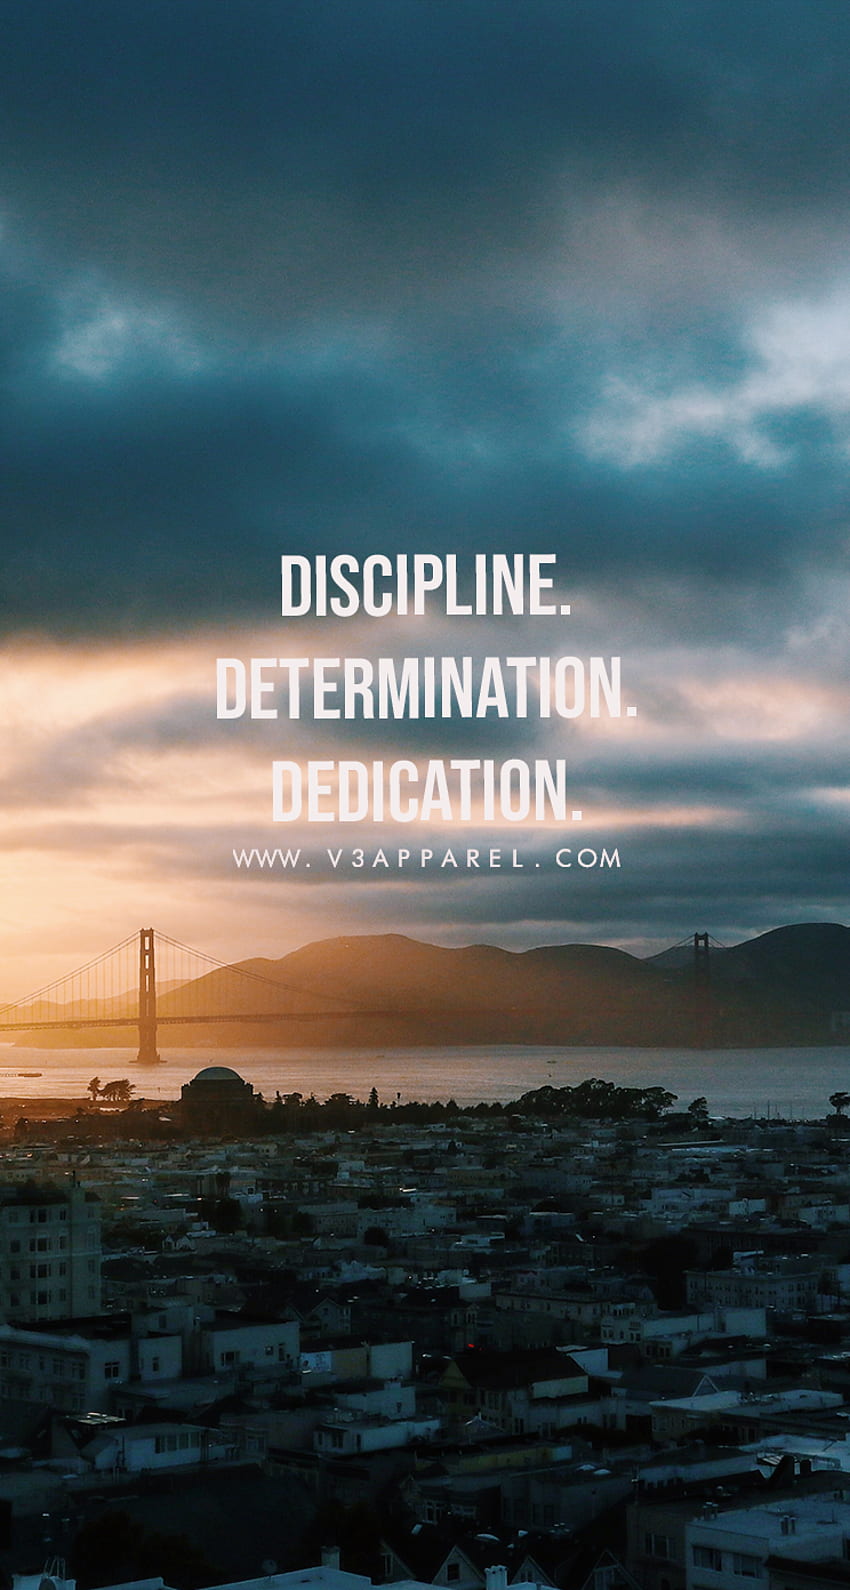 Discipline Over Motivation